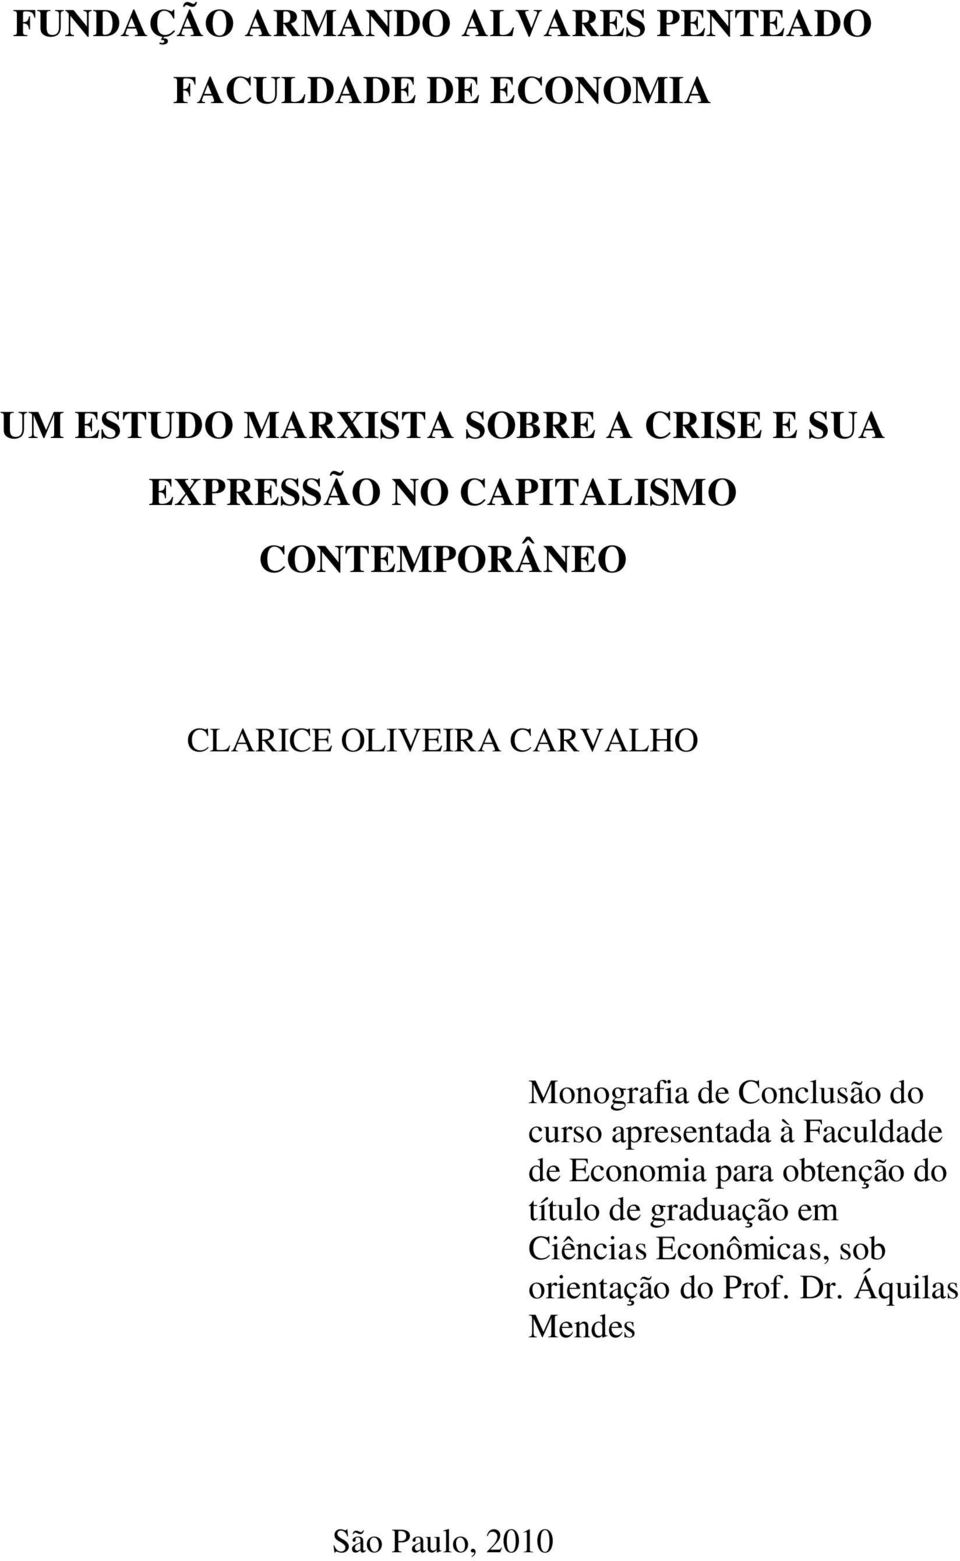 Monografia de Conclusão do curso apresentada à Faculdade de Economia para obtenção do